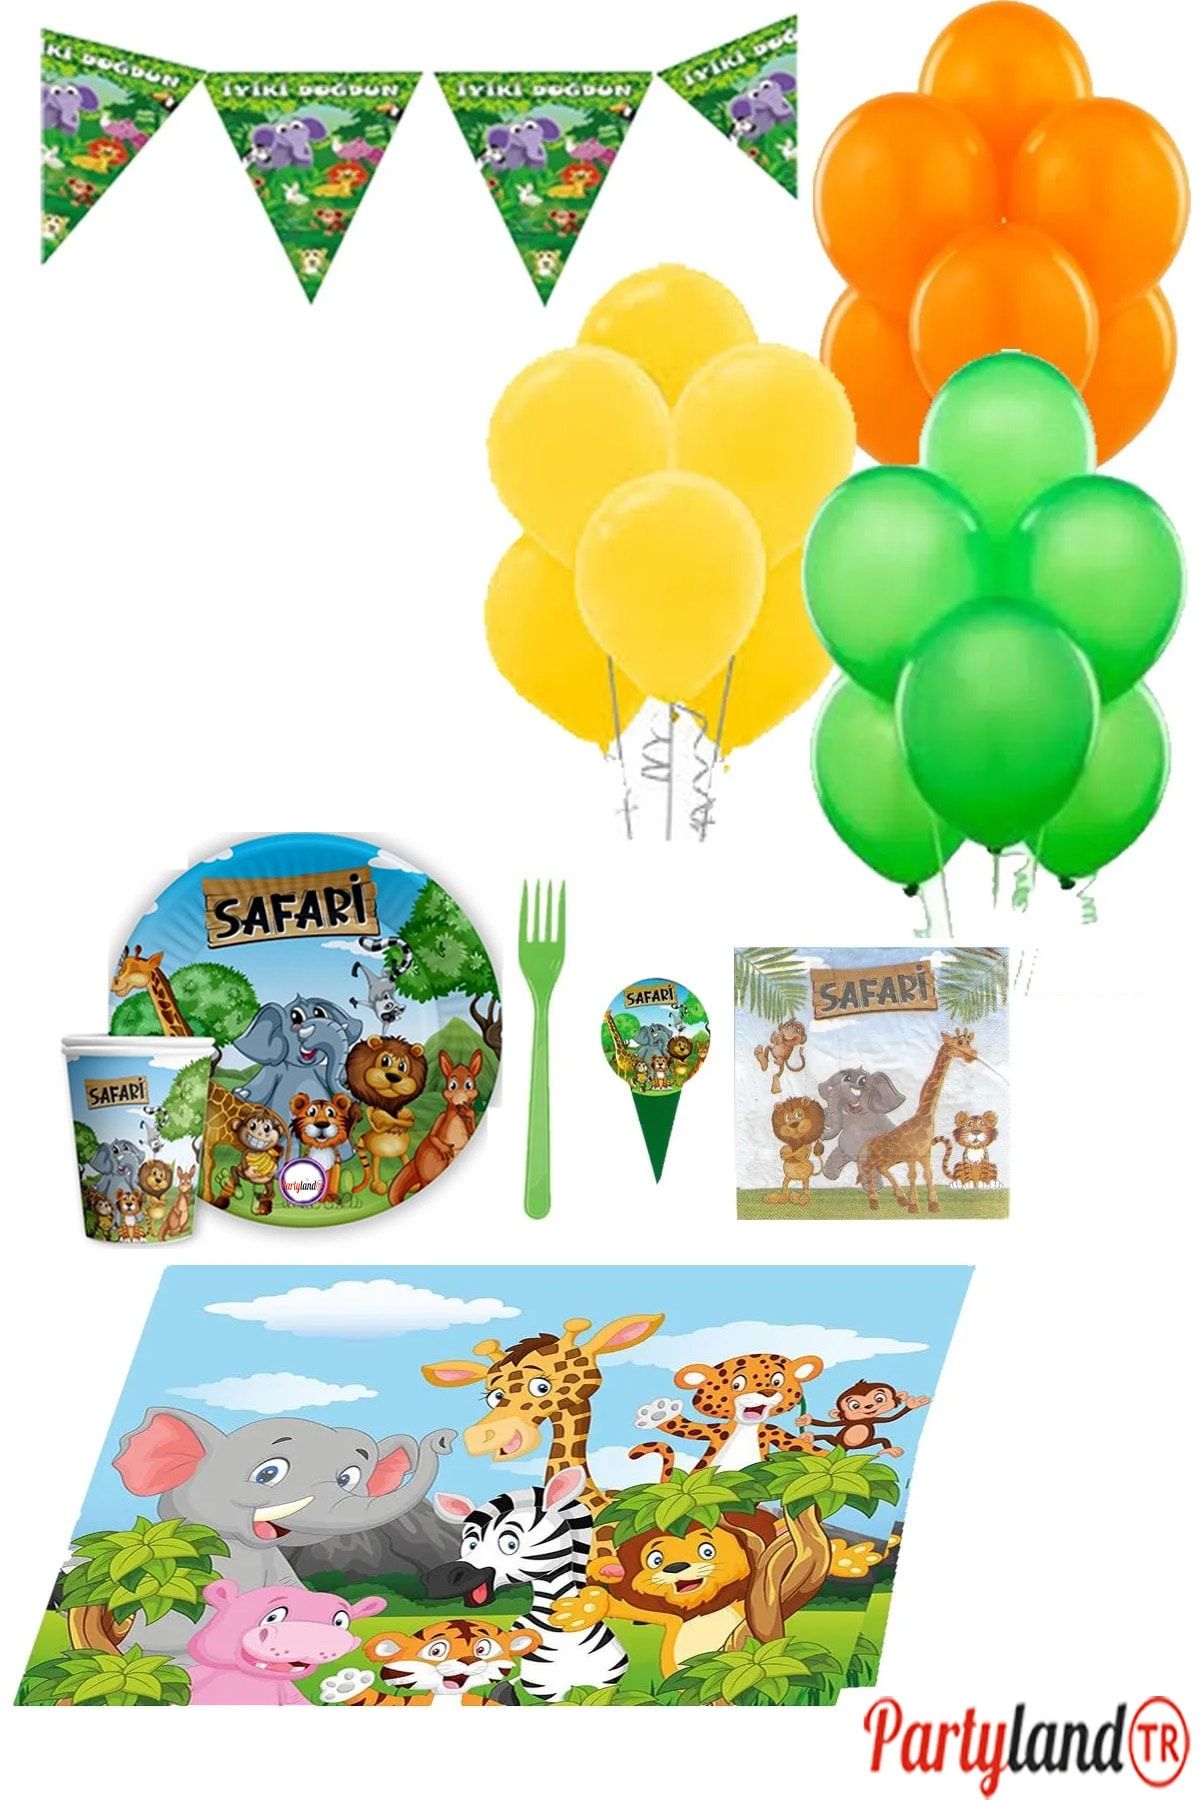 Safari Partylandtr Temalı 16 Kişilik Doğum Günü Parti Seti